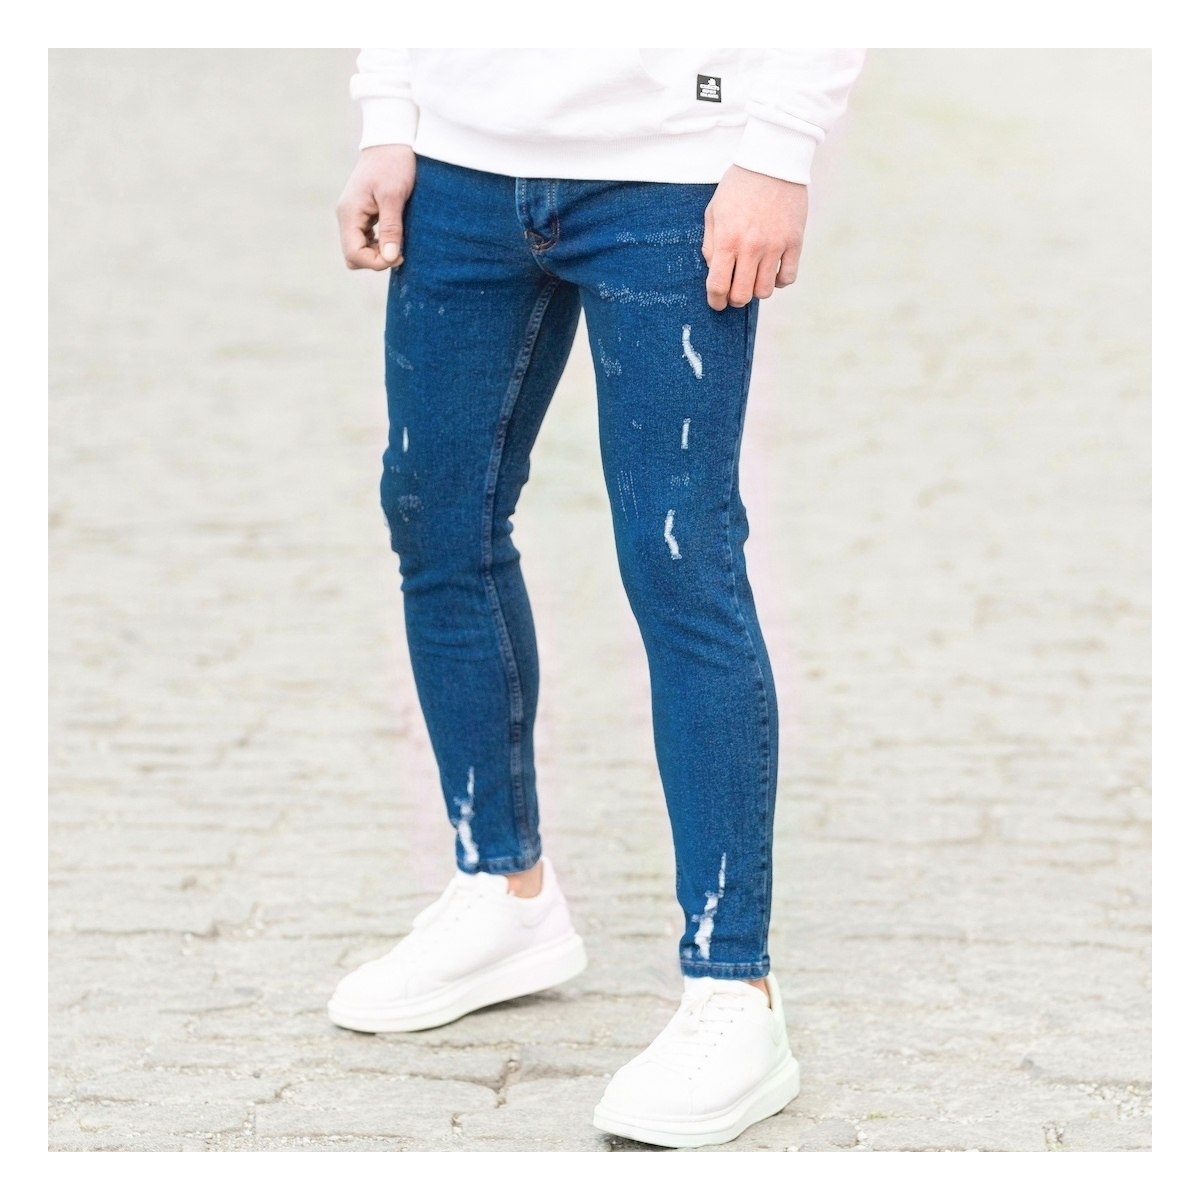 Herren Jeans mit Rissen in dunkelblau | Martin Valen